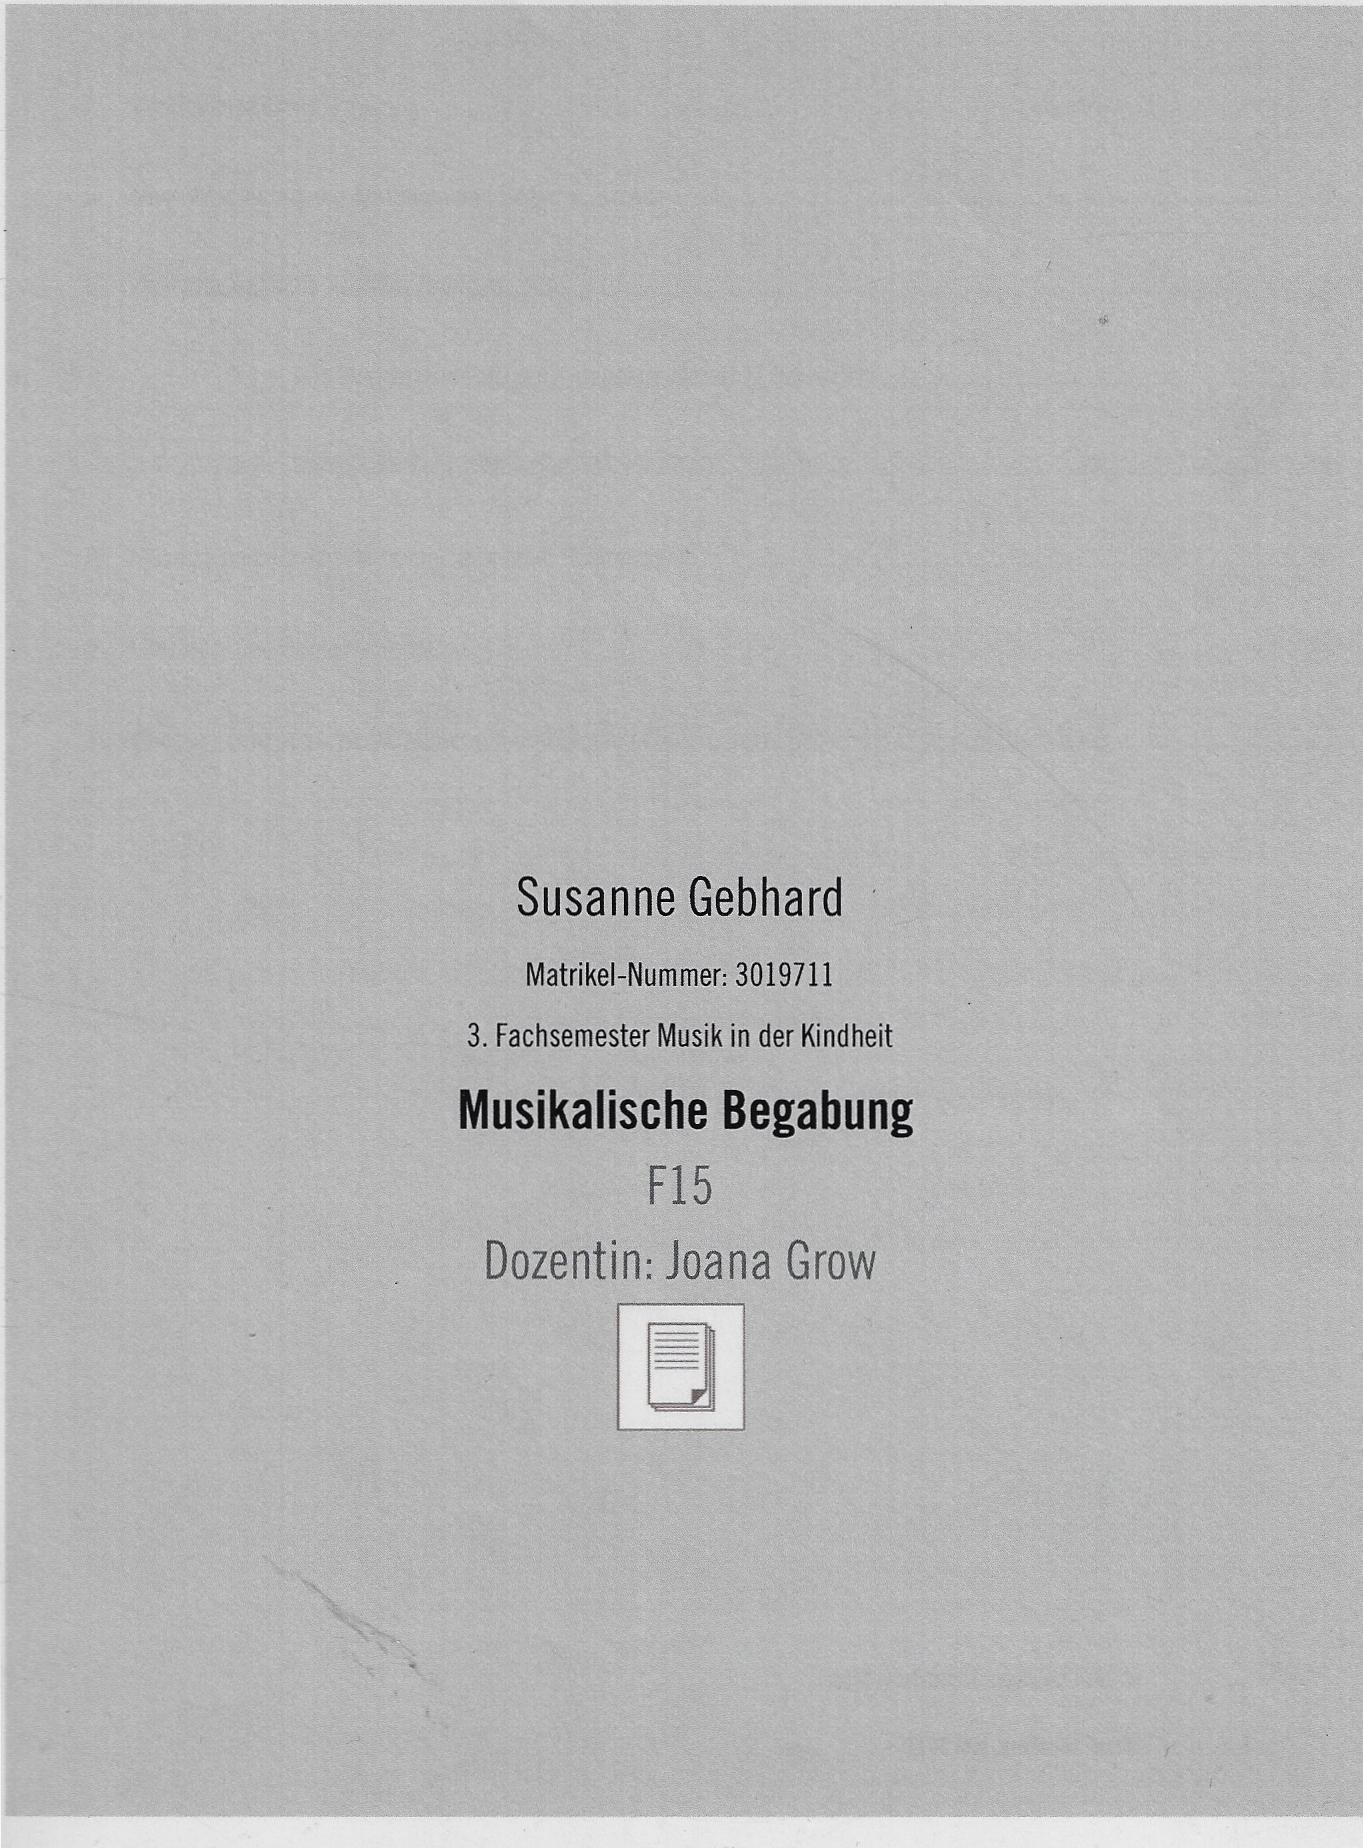 Musikalische Begabung (Fritz-Wunderlich-Gesellschaft e.V. RR-F)